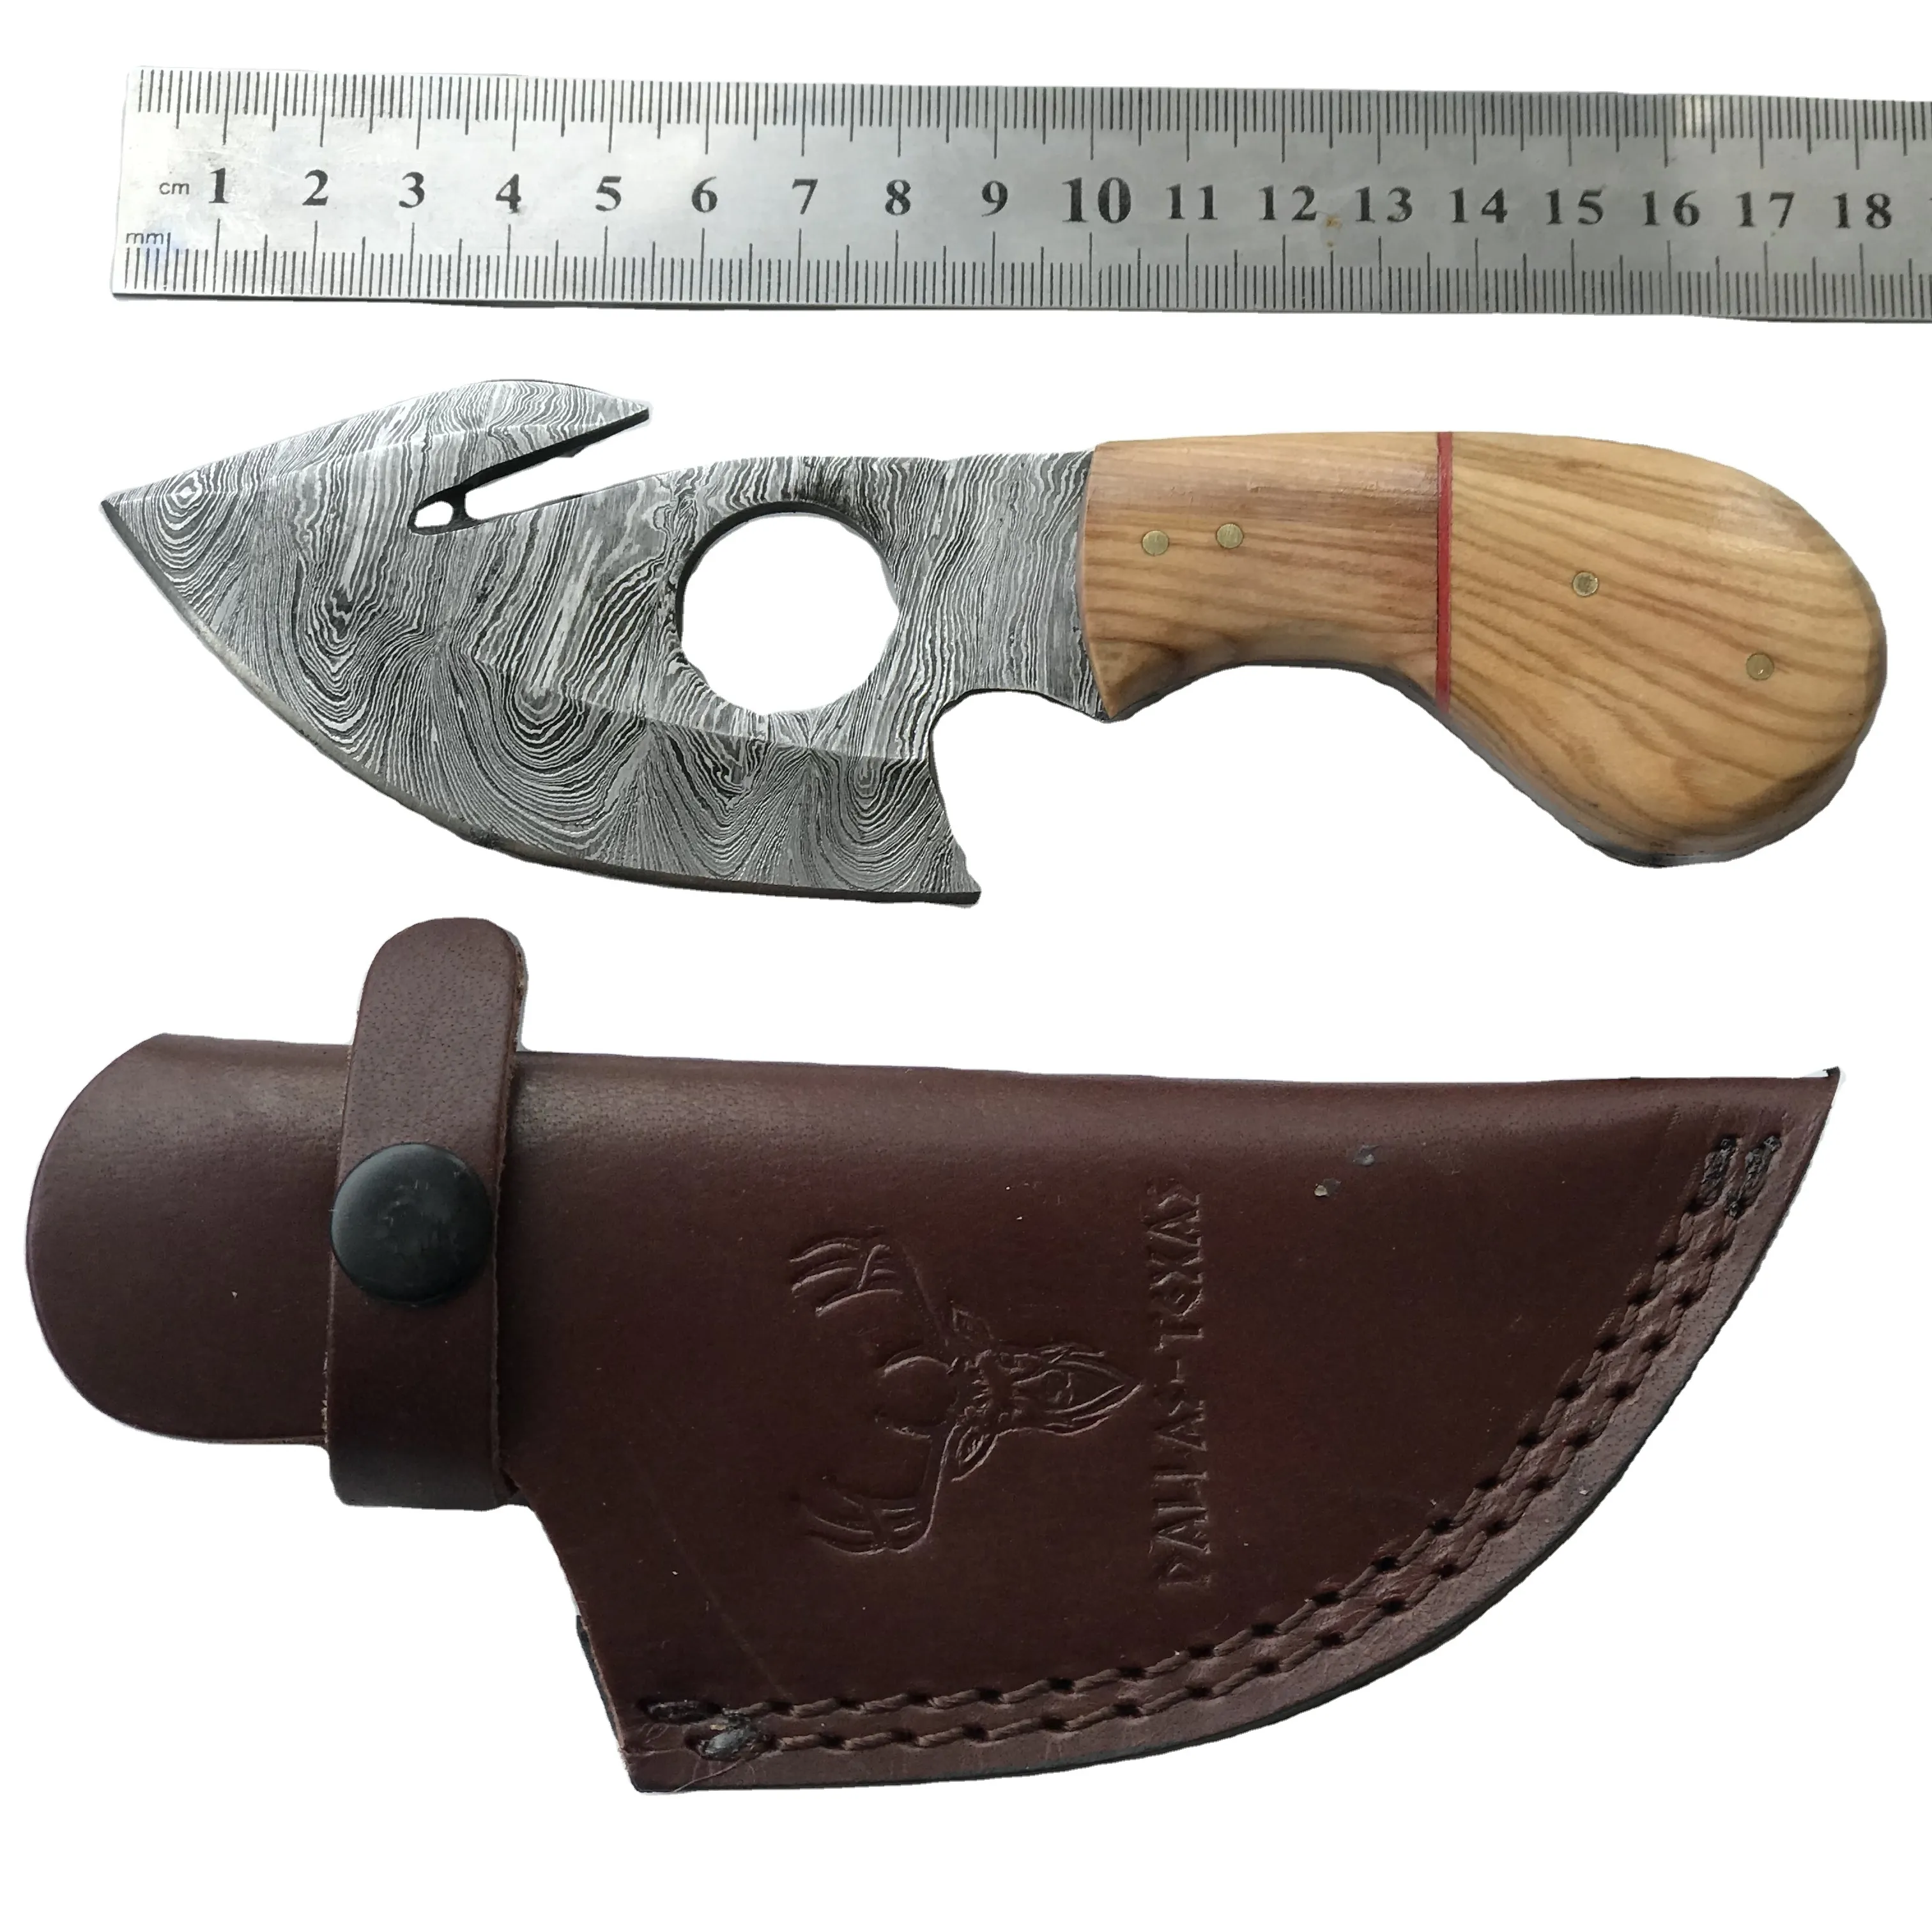 DD-01 ручной работы по индивидуальному заказу, нож из дамасской стали нож Скиннер с оливкового дерева и поставляется с кожаным чехлом 7 дюймов в целом